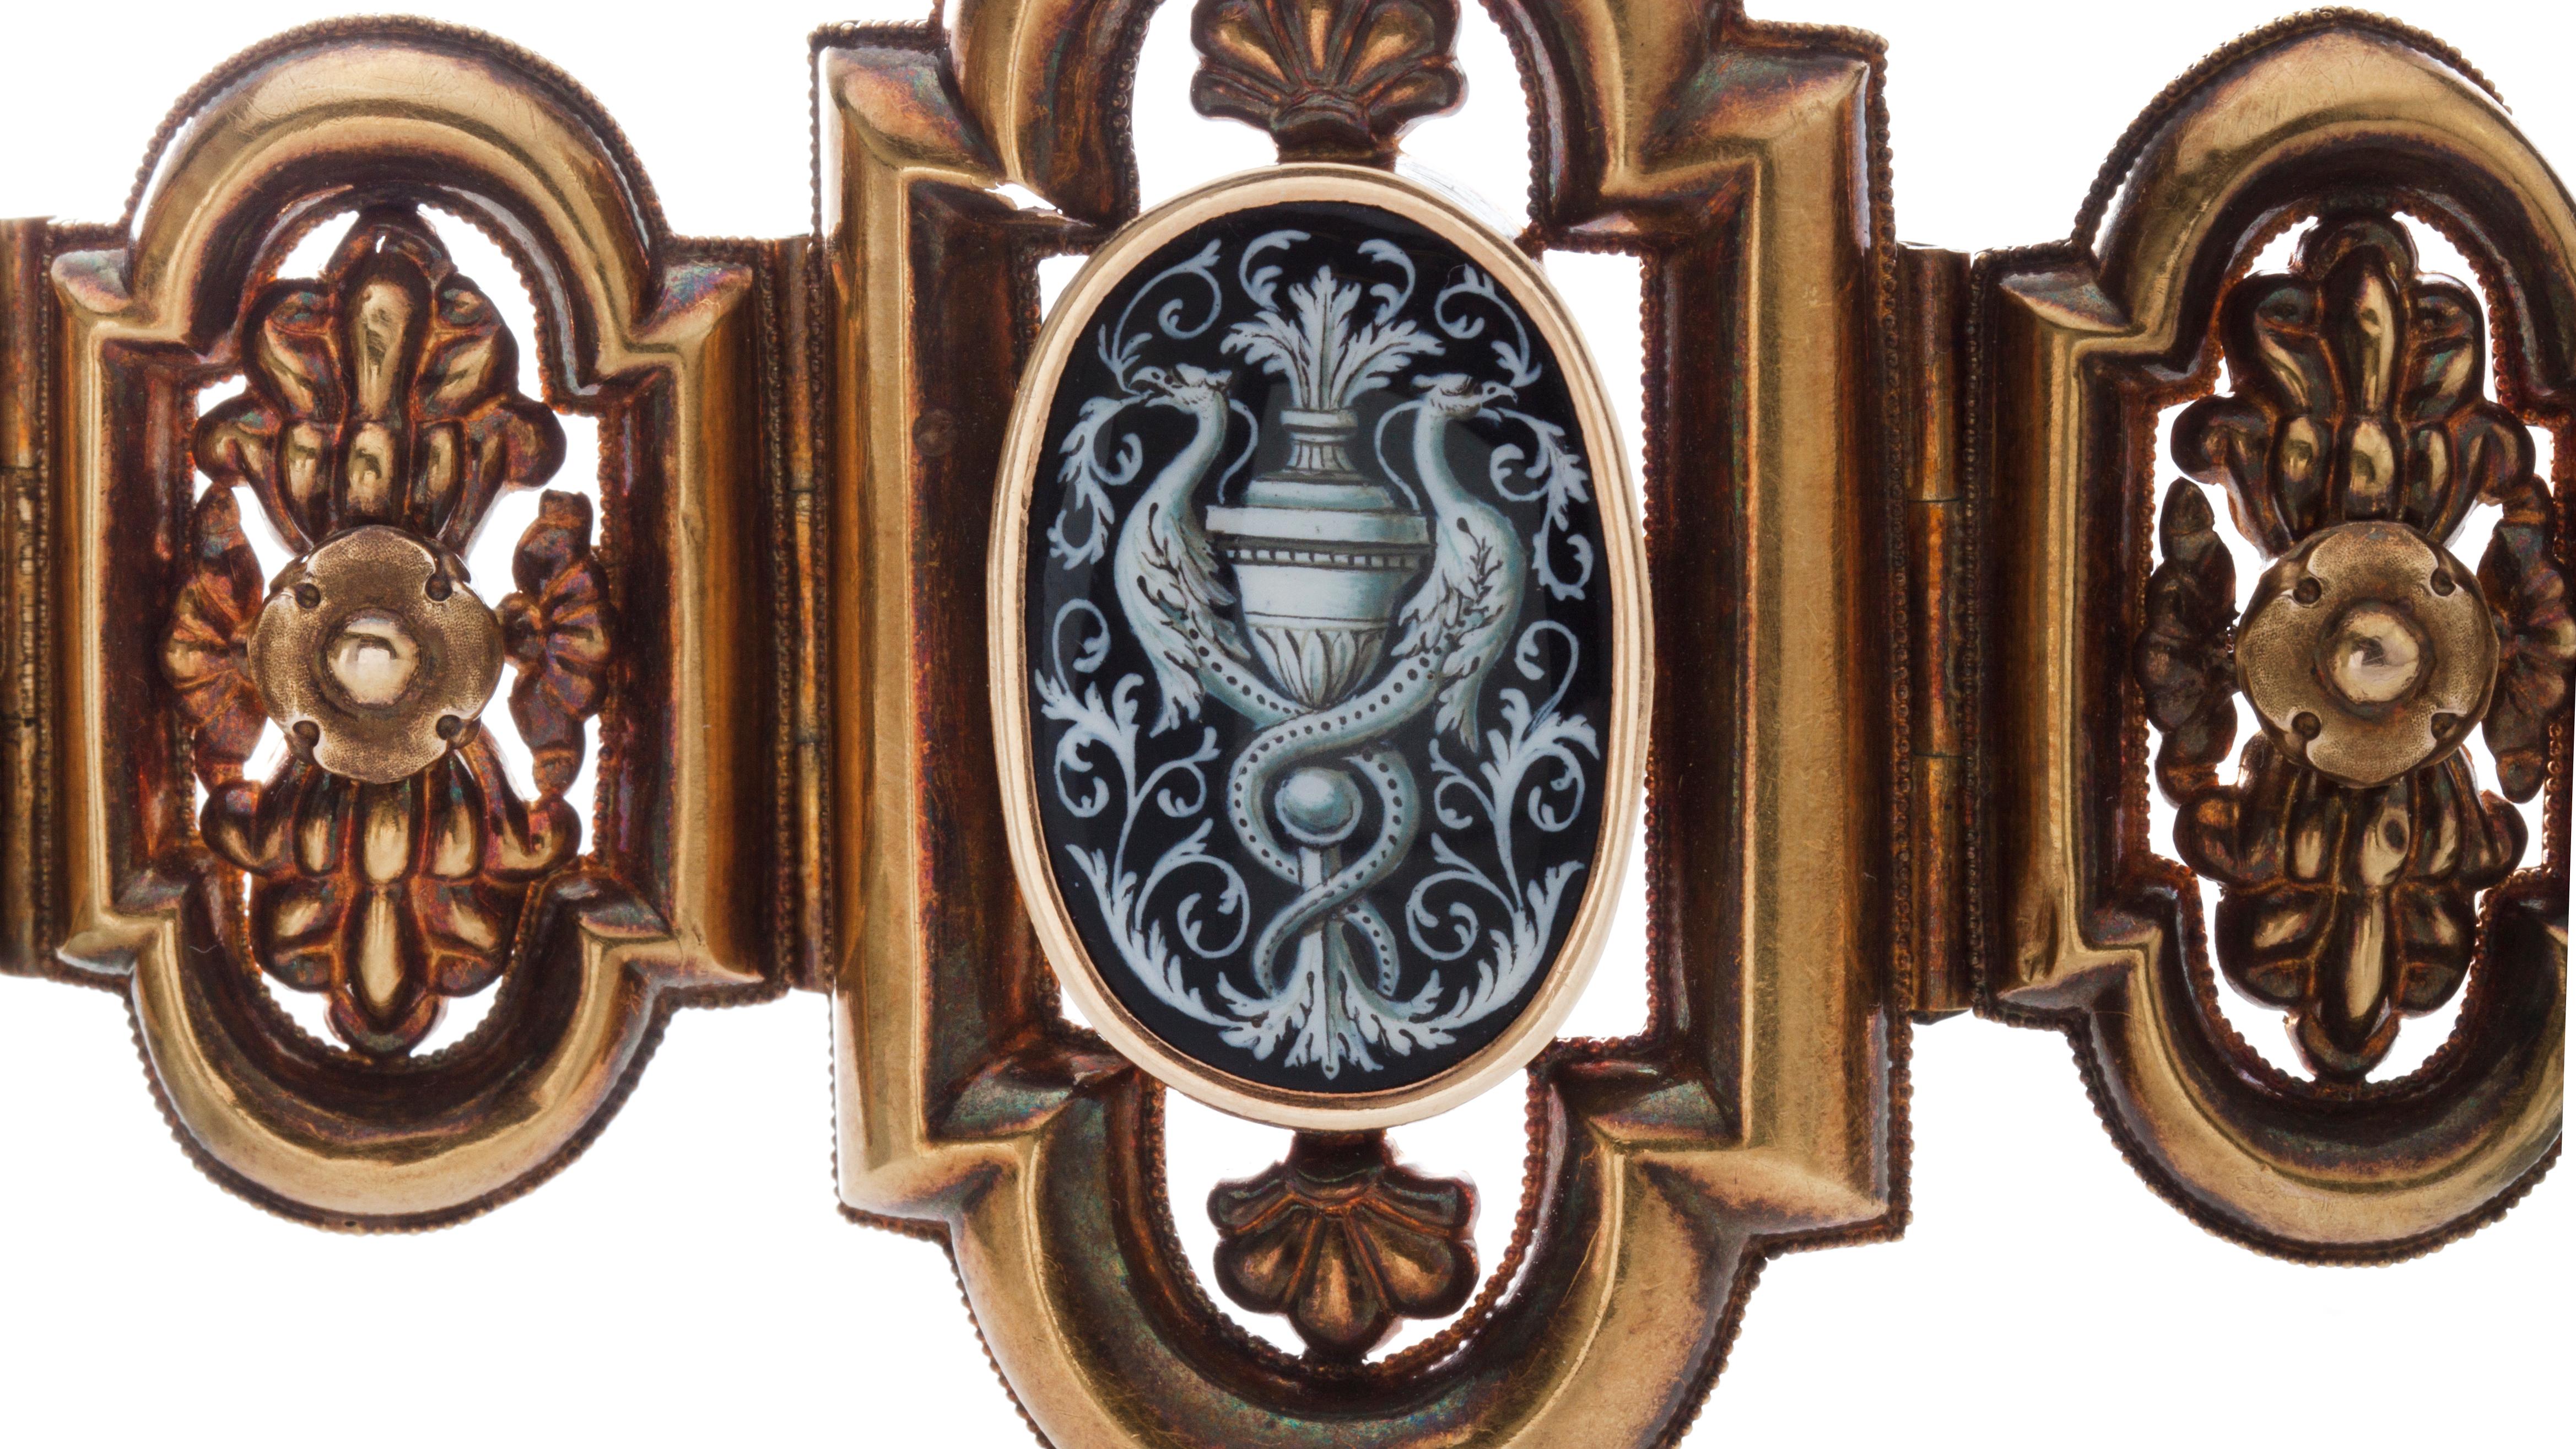 Antikes Damenarmband aus 18kt Gelbgold, mit Emaille in der Mitte, die ein Füllhorn darstellt
Positiv getestet auf 18kt Gold.
Hergestellt in Italien, um 1870'x

Abmessungen -
Gewicht: 28 Gramm
Länge x Breite: 17 x 5,2 cm

Zustand: Das Armband hat